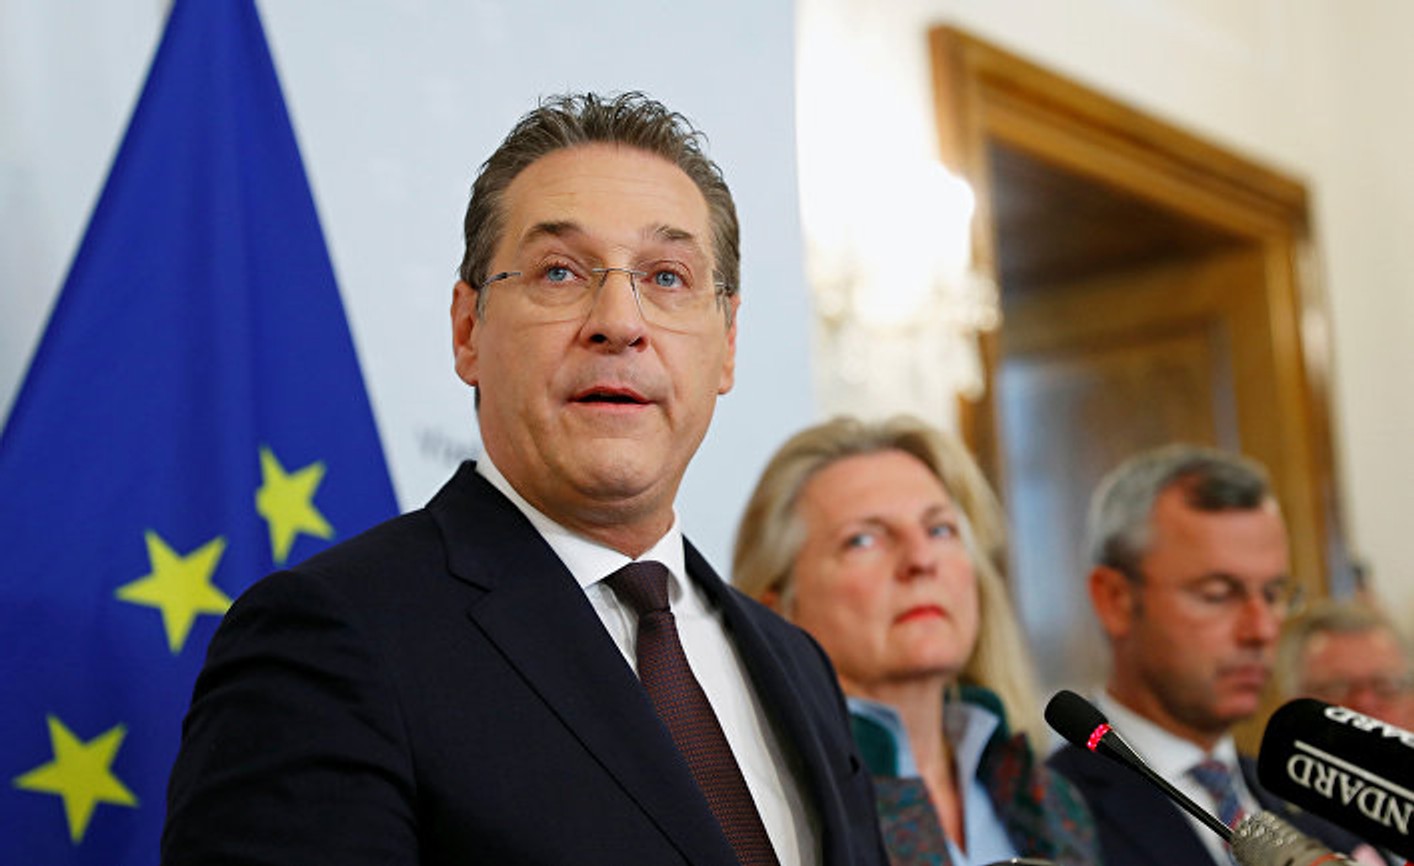 Колишнього віце-канцлера Австрії засудили до умовного терміну у справі про корупцію